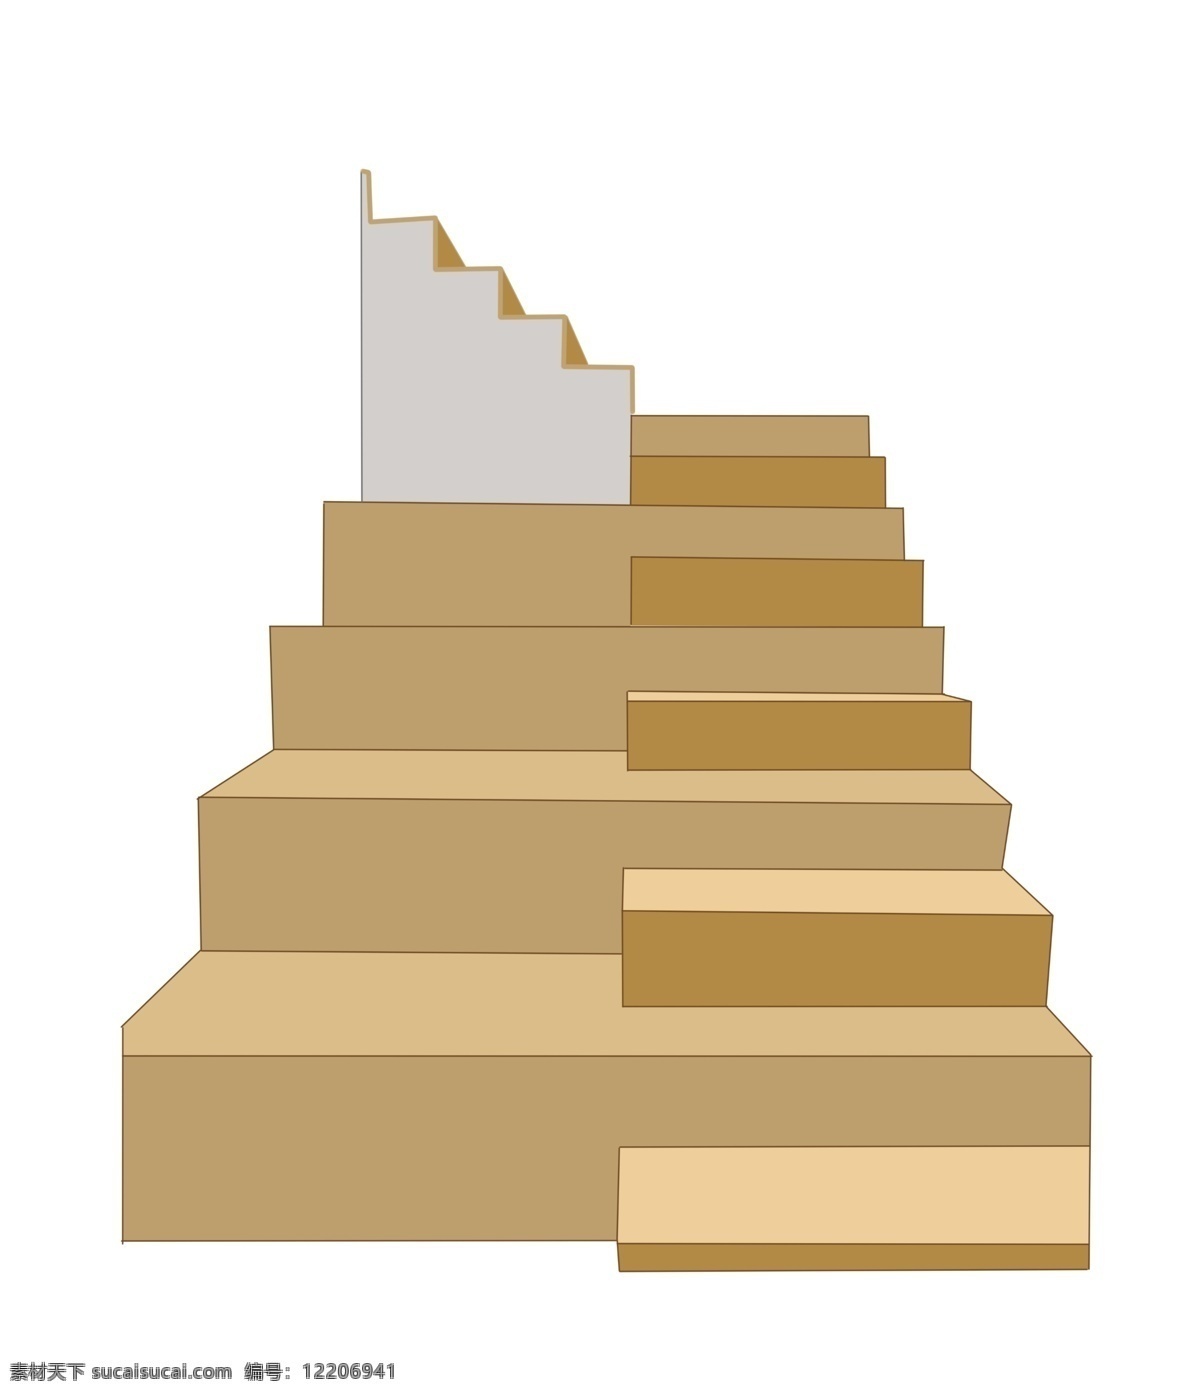 棕色 立体 楼梯 插画 攀爬楼梯 棕色楼梯 立体楼梯 楼梯插图 建筑 爬楼梯 楼梯房